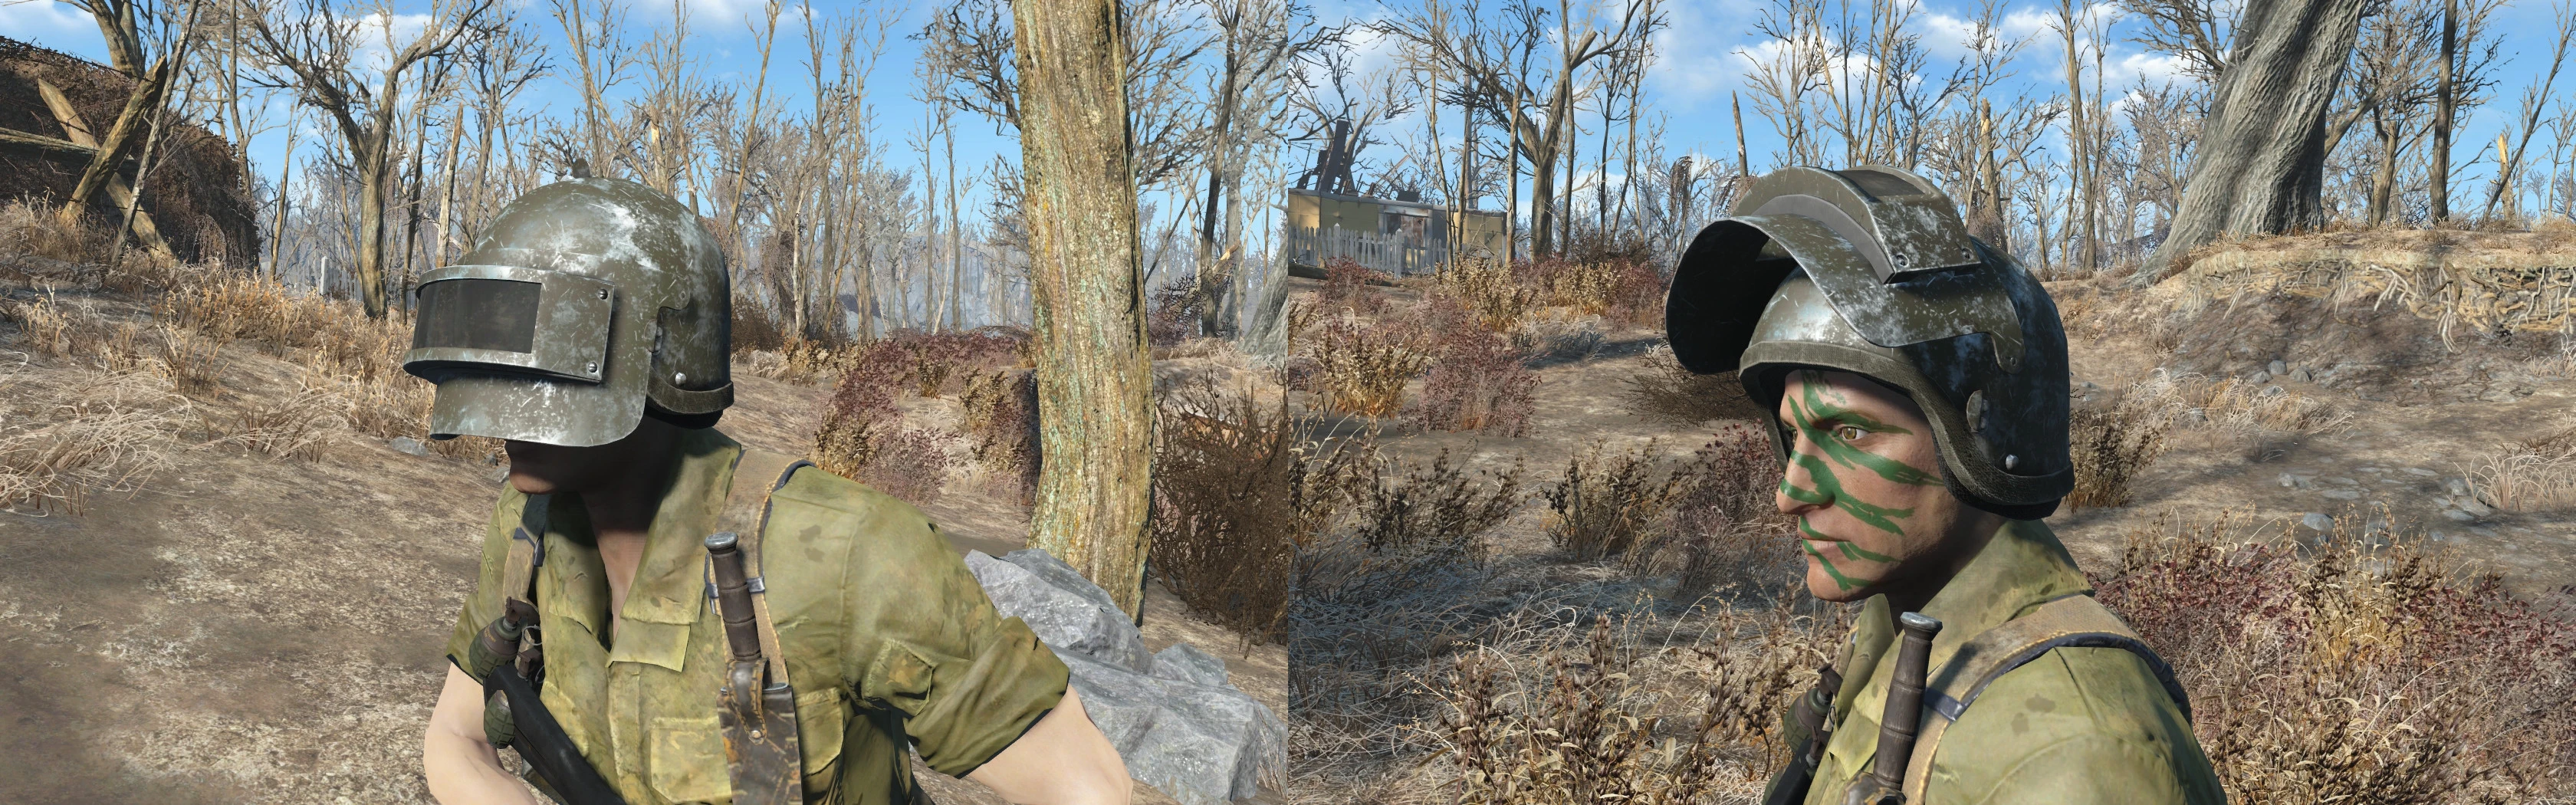 Fallout 4 altyn helmet фото 1